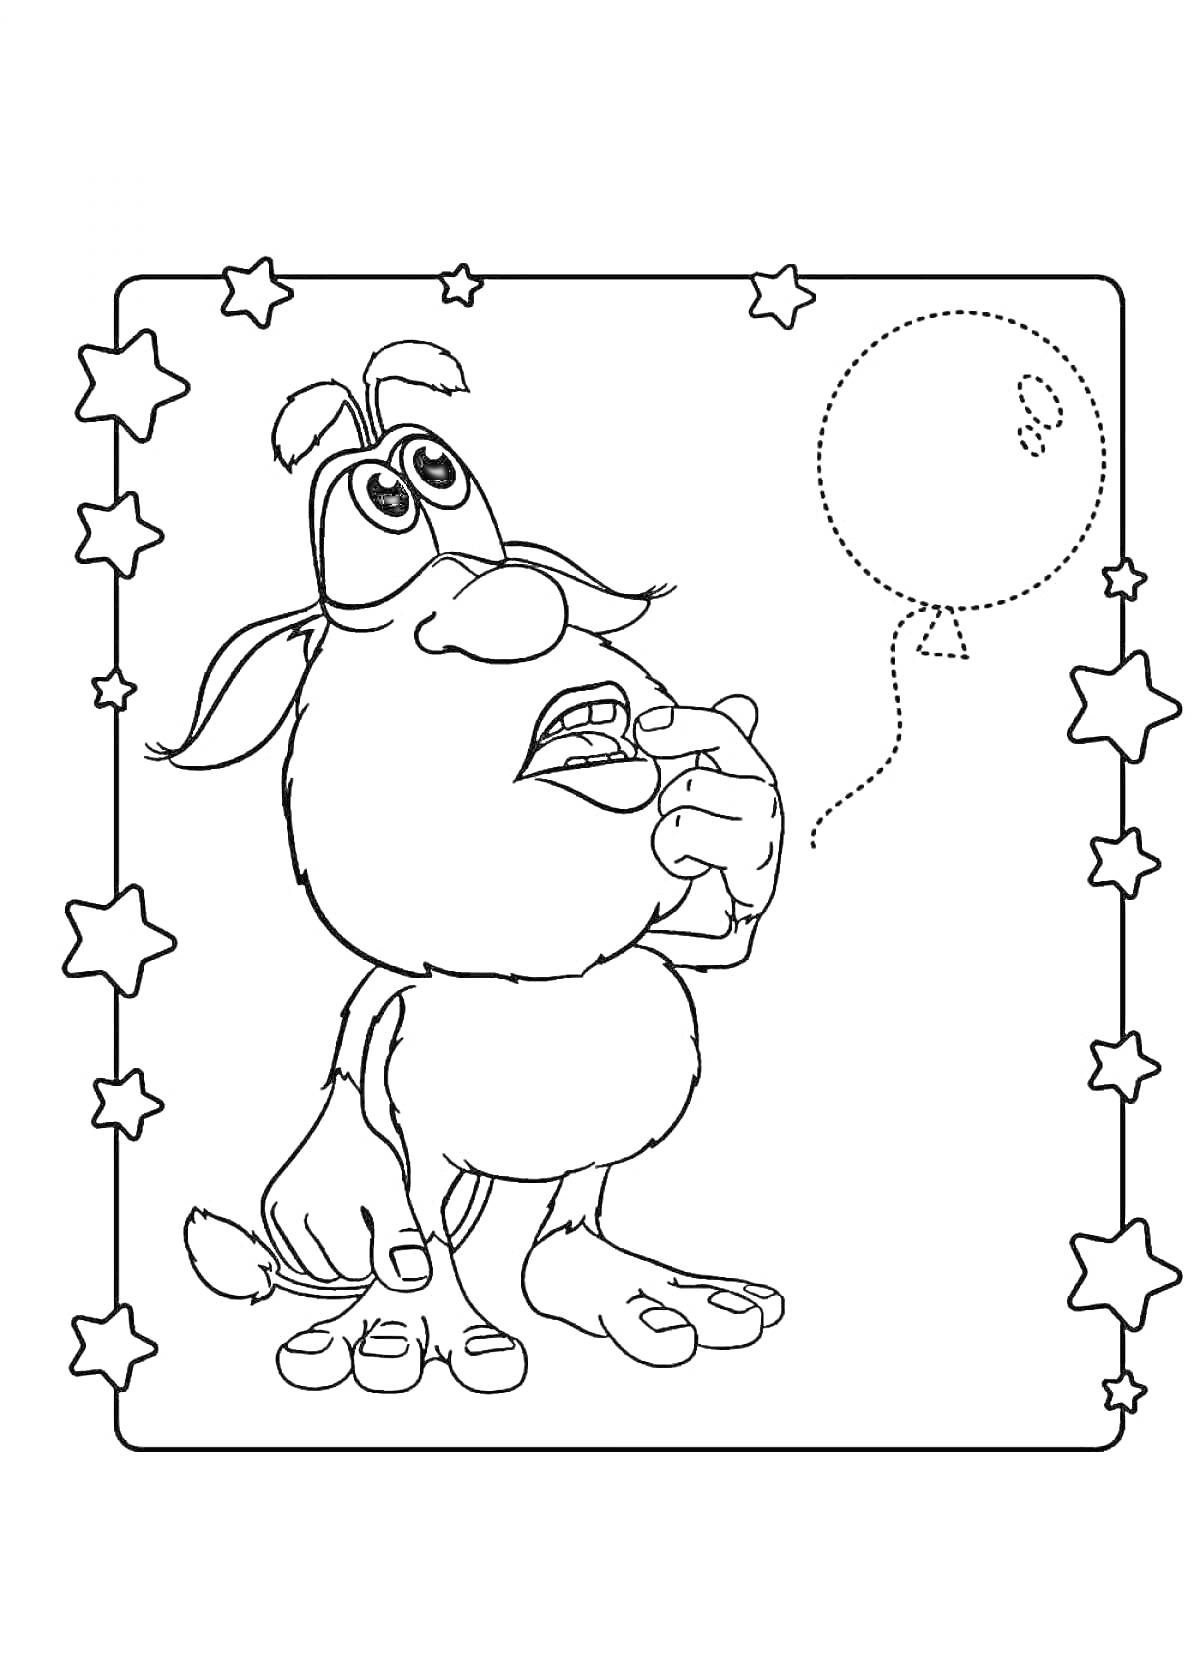 Раскраска Буба, держит палец во рту и смотрит на воздушный шарик в звездной рамке